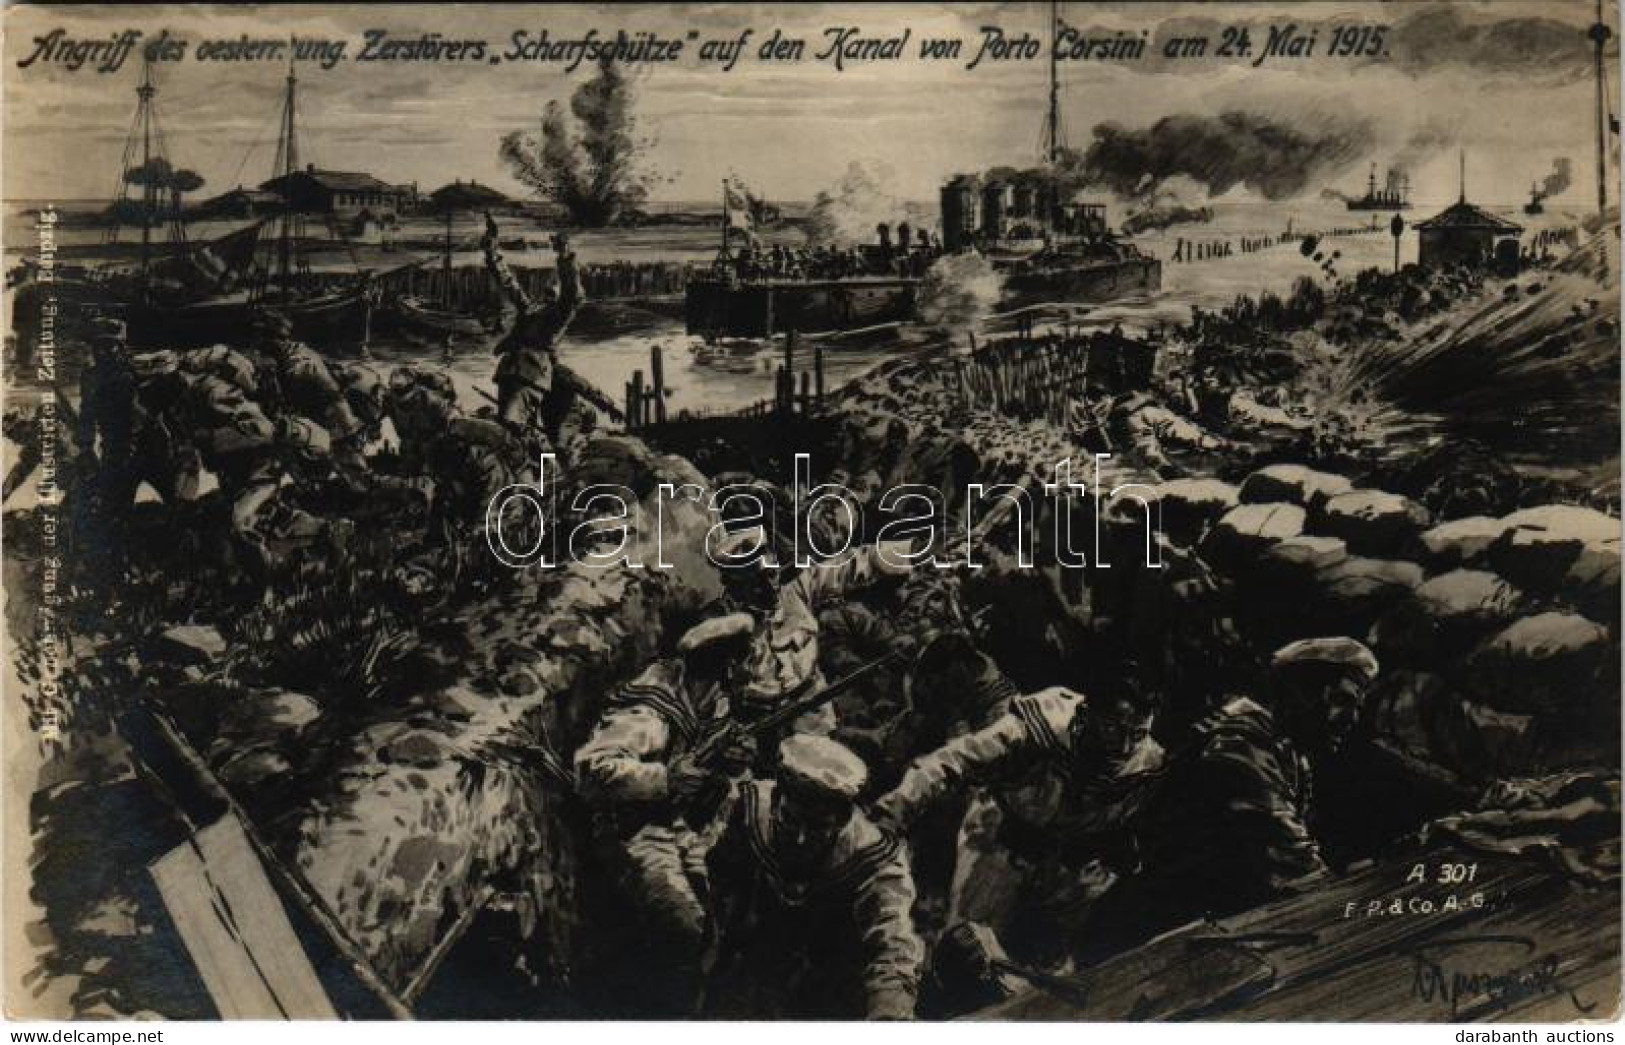 T2/T3 1915 Angriff Des Oesterr.-ung. Zerstörers "Scharfschütze" Auf Den Kanal Von Porto Corsini Am 24. Mai 1915. / SMS S - Unclassified